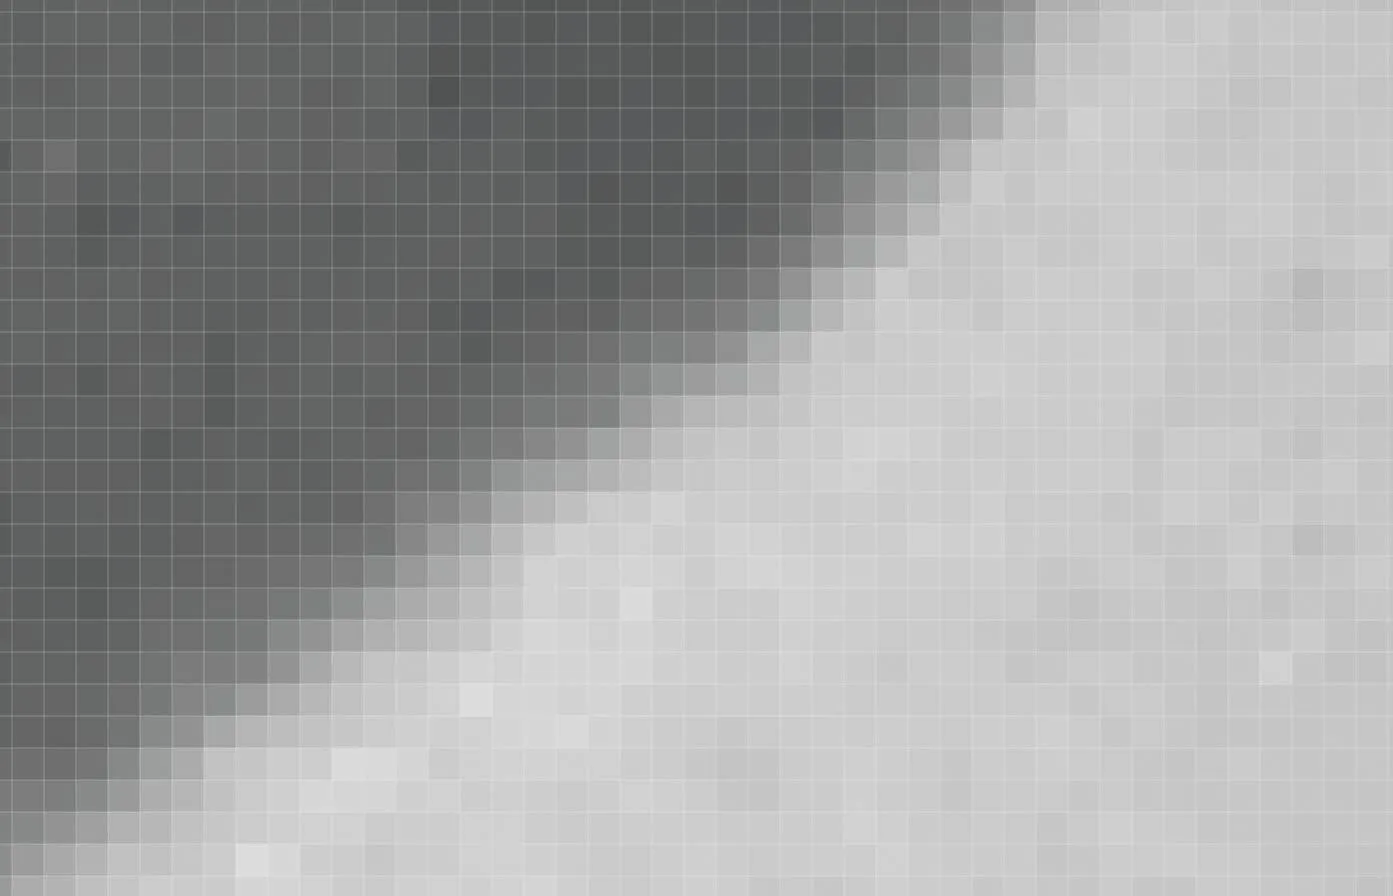 Photographie pixelisée en noir et blanc